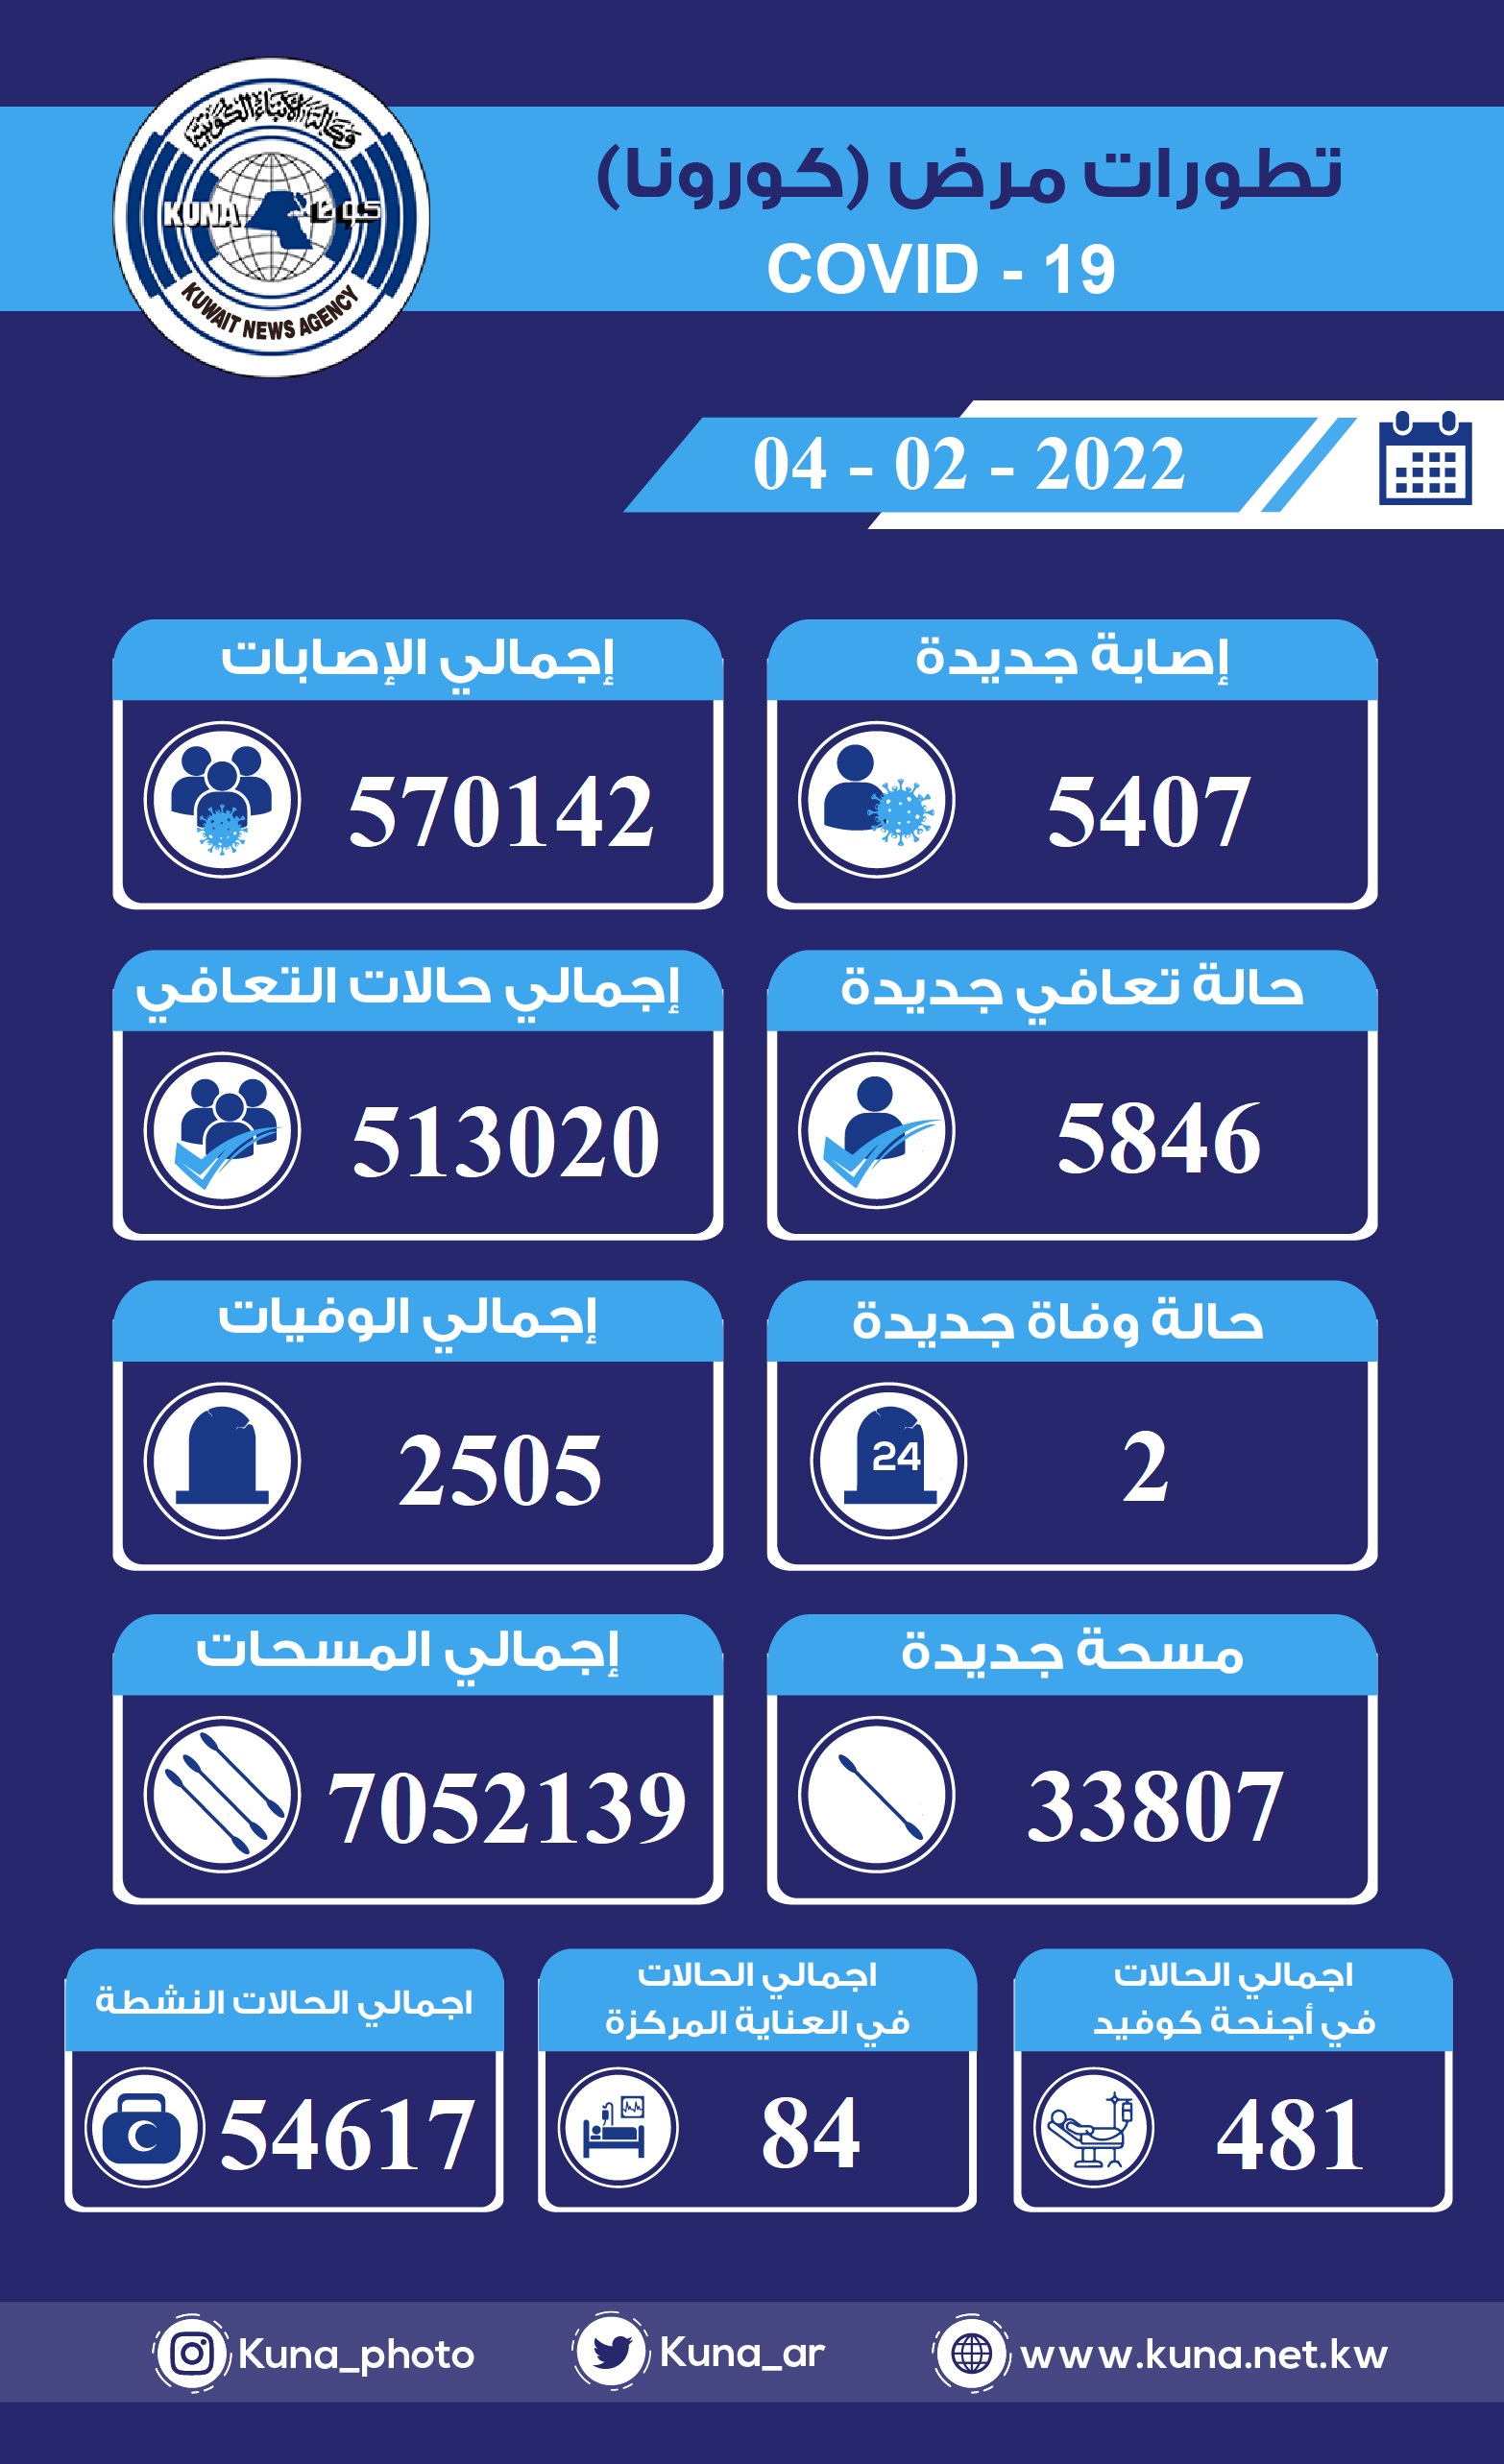 (الصحة) الكويتية: 5407 إصابات جديدة ب(كورونا) وشفاء 5846 وتسجيل حالتي وفاة خلال ال24 ساعة الماضية                                                                                                                                                         